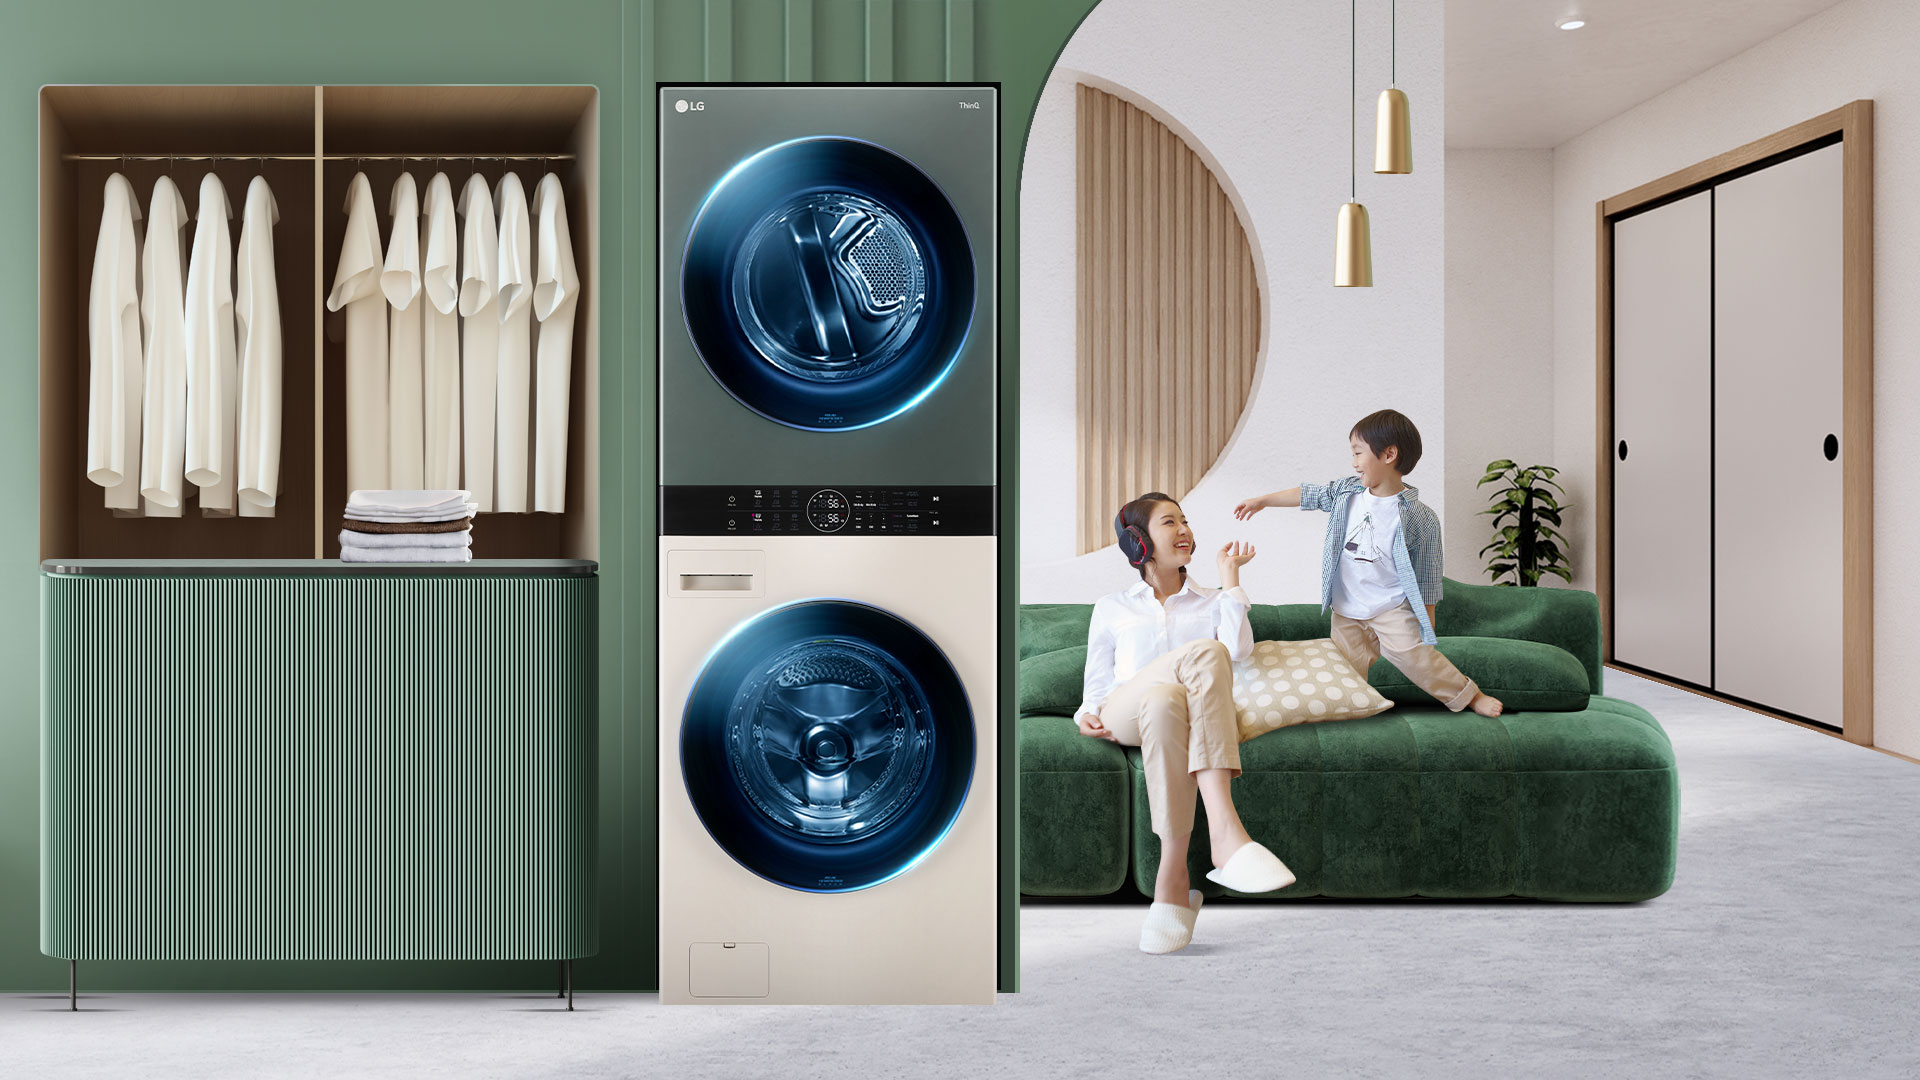 LG ra mắt Tháp giặt sấy LG Washtower™ - Giải pháp đồng bộ với bộ điều khiển trung tâm